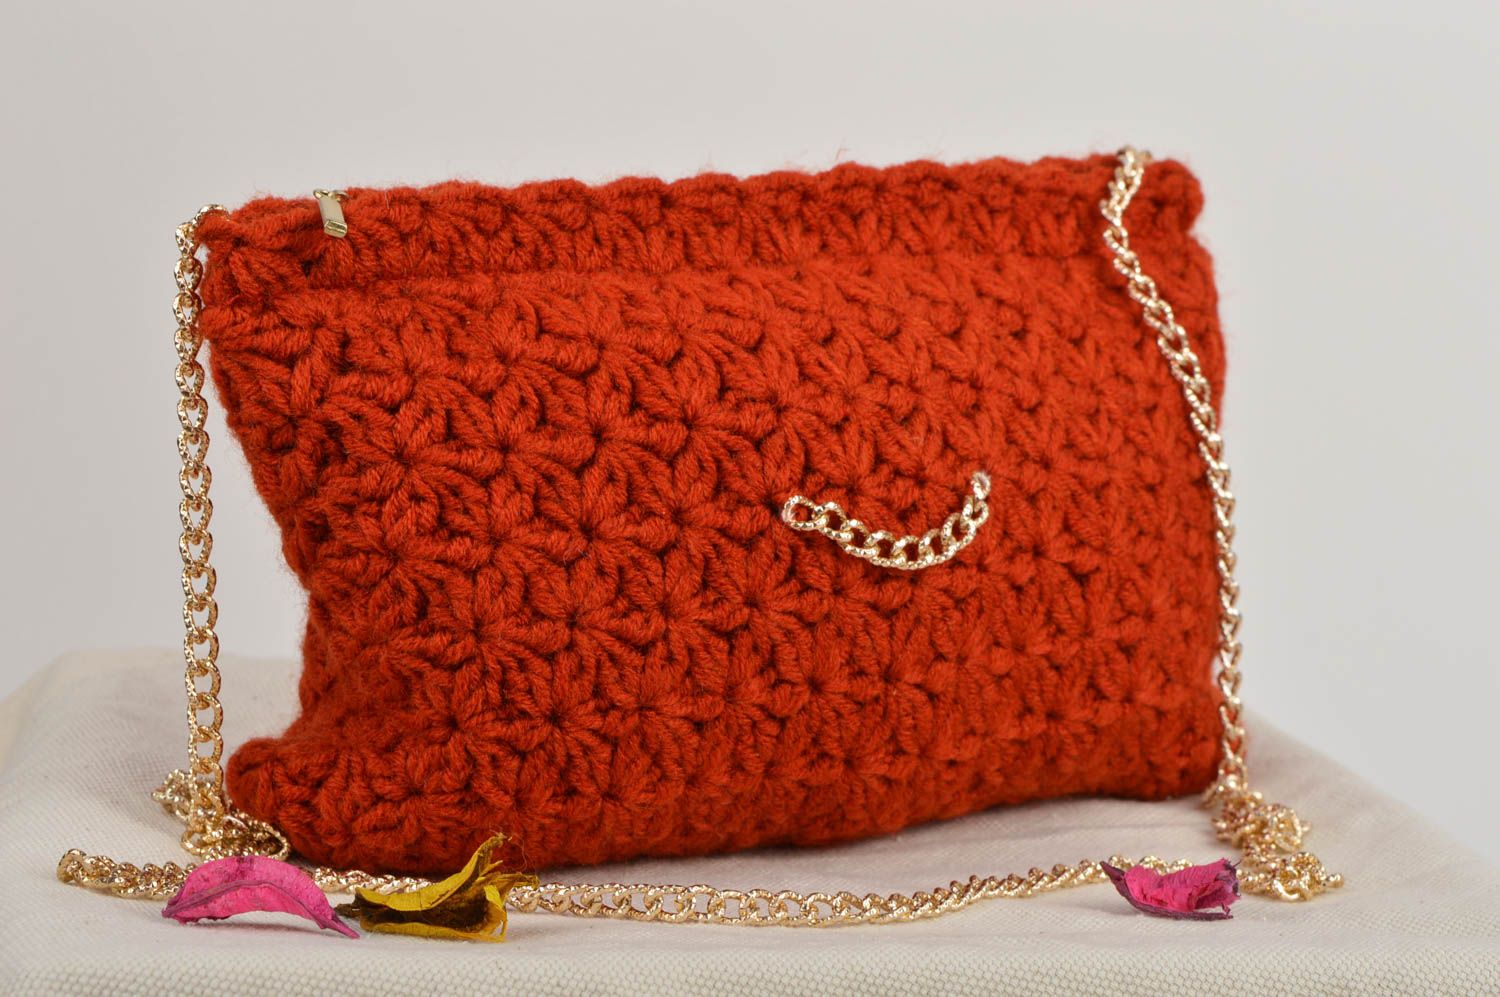 crochet designer handbags